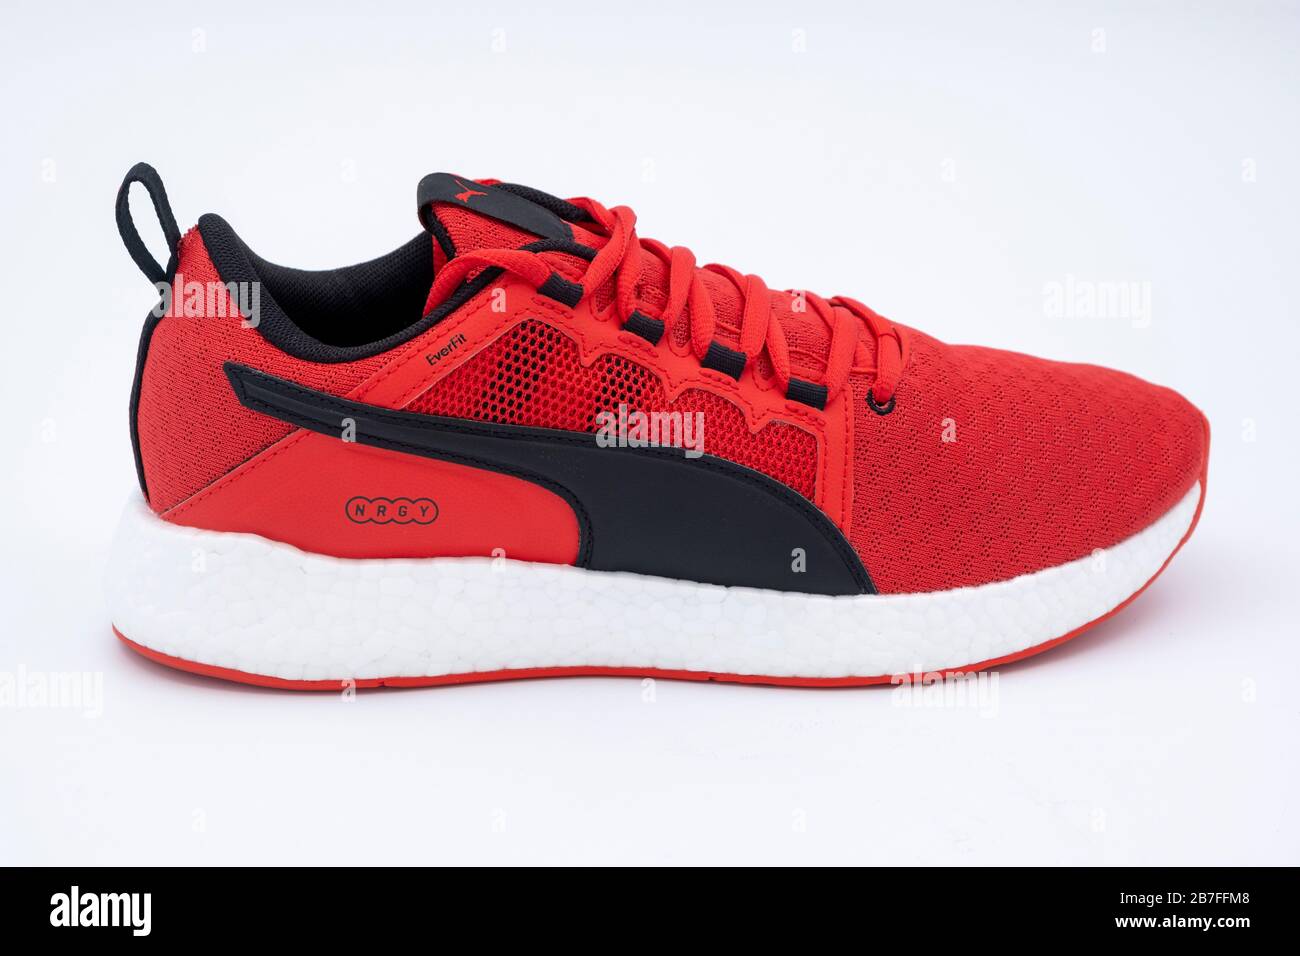 Zapatillas de running Puma de color rojo brillante aisladas sobre fondo blanco Fotografía de stock Alamy